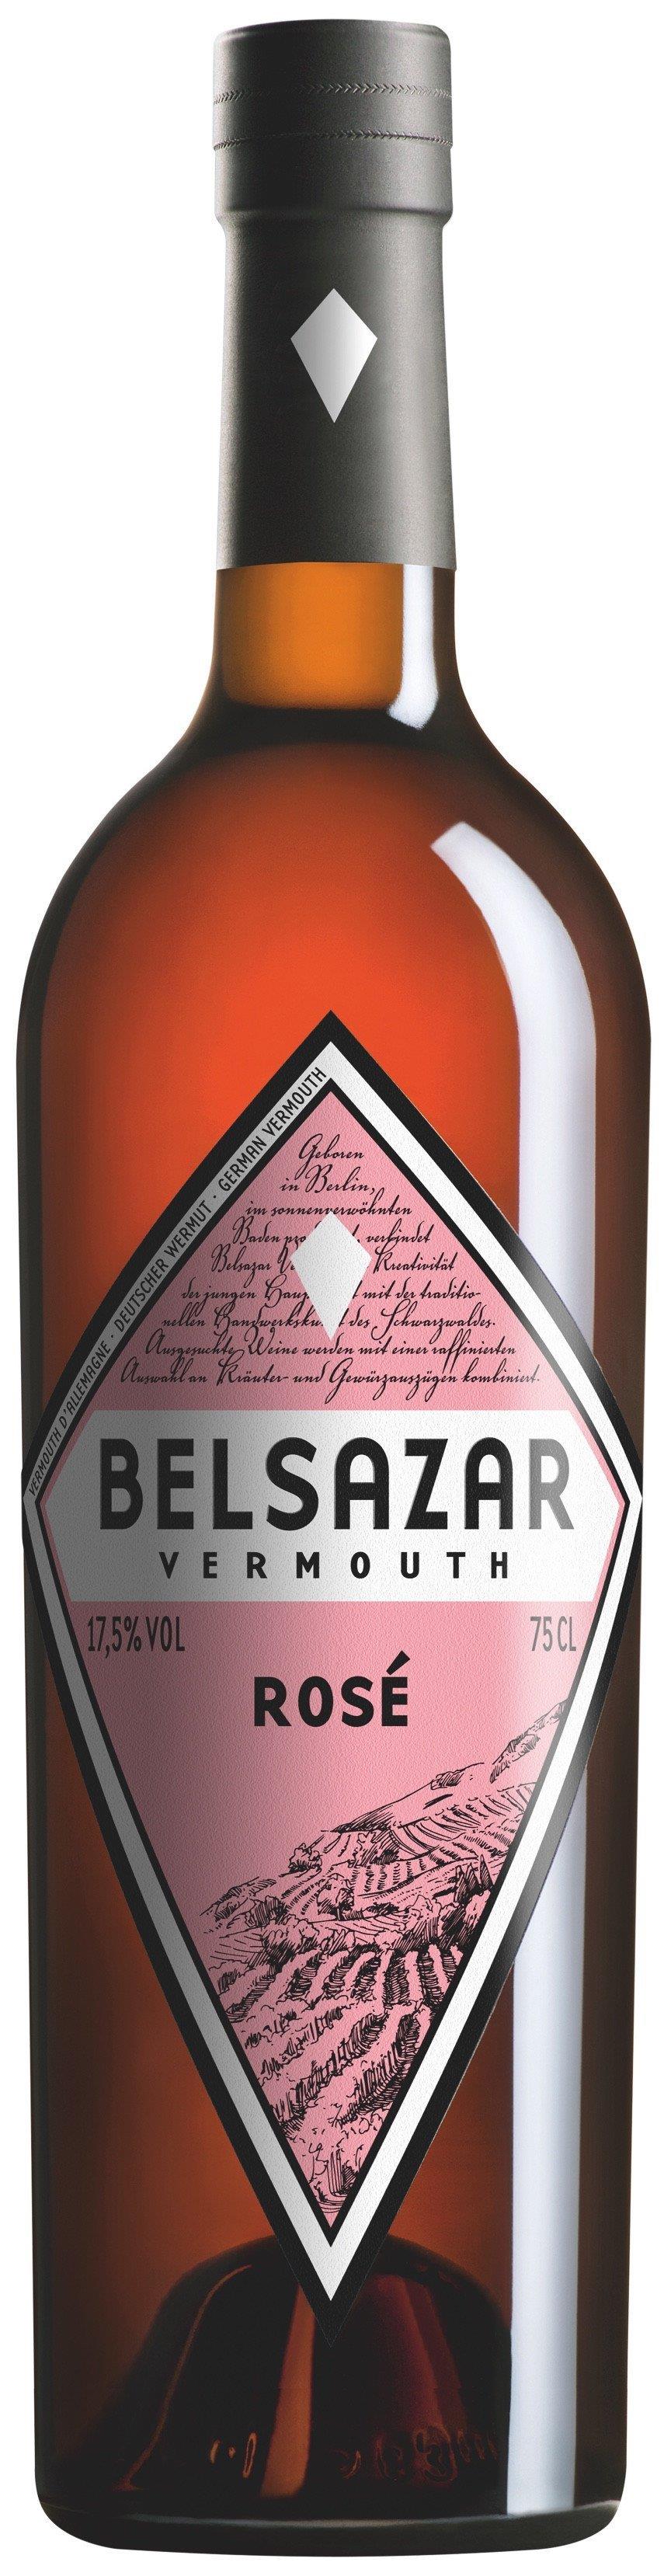 BELSAZAR ROSE VERMOUTH 17,5% 75 CL.